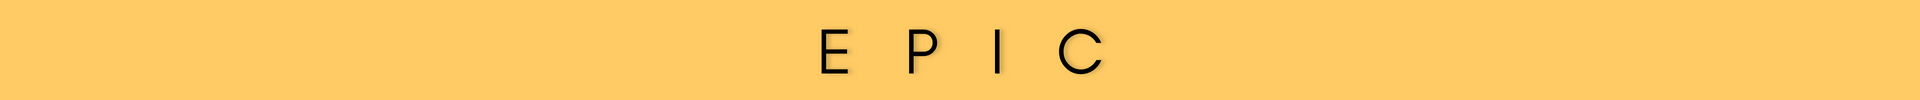 Digital Media Logo - 10